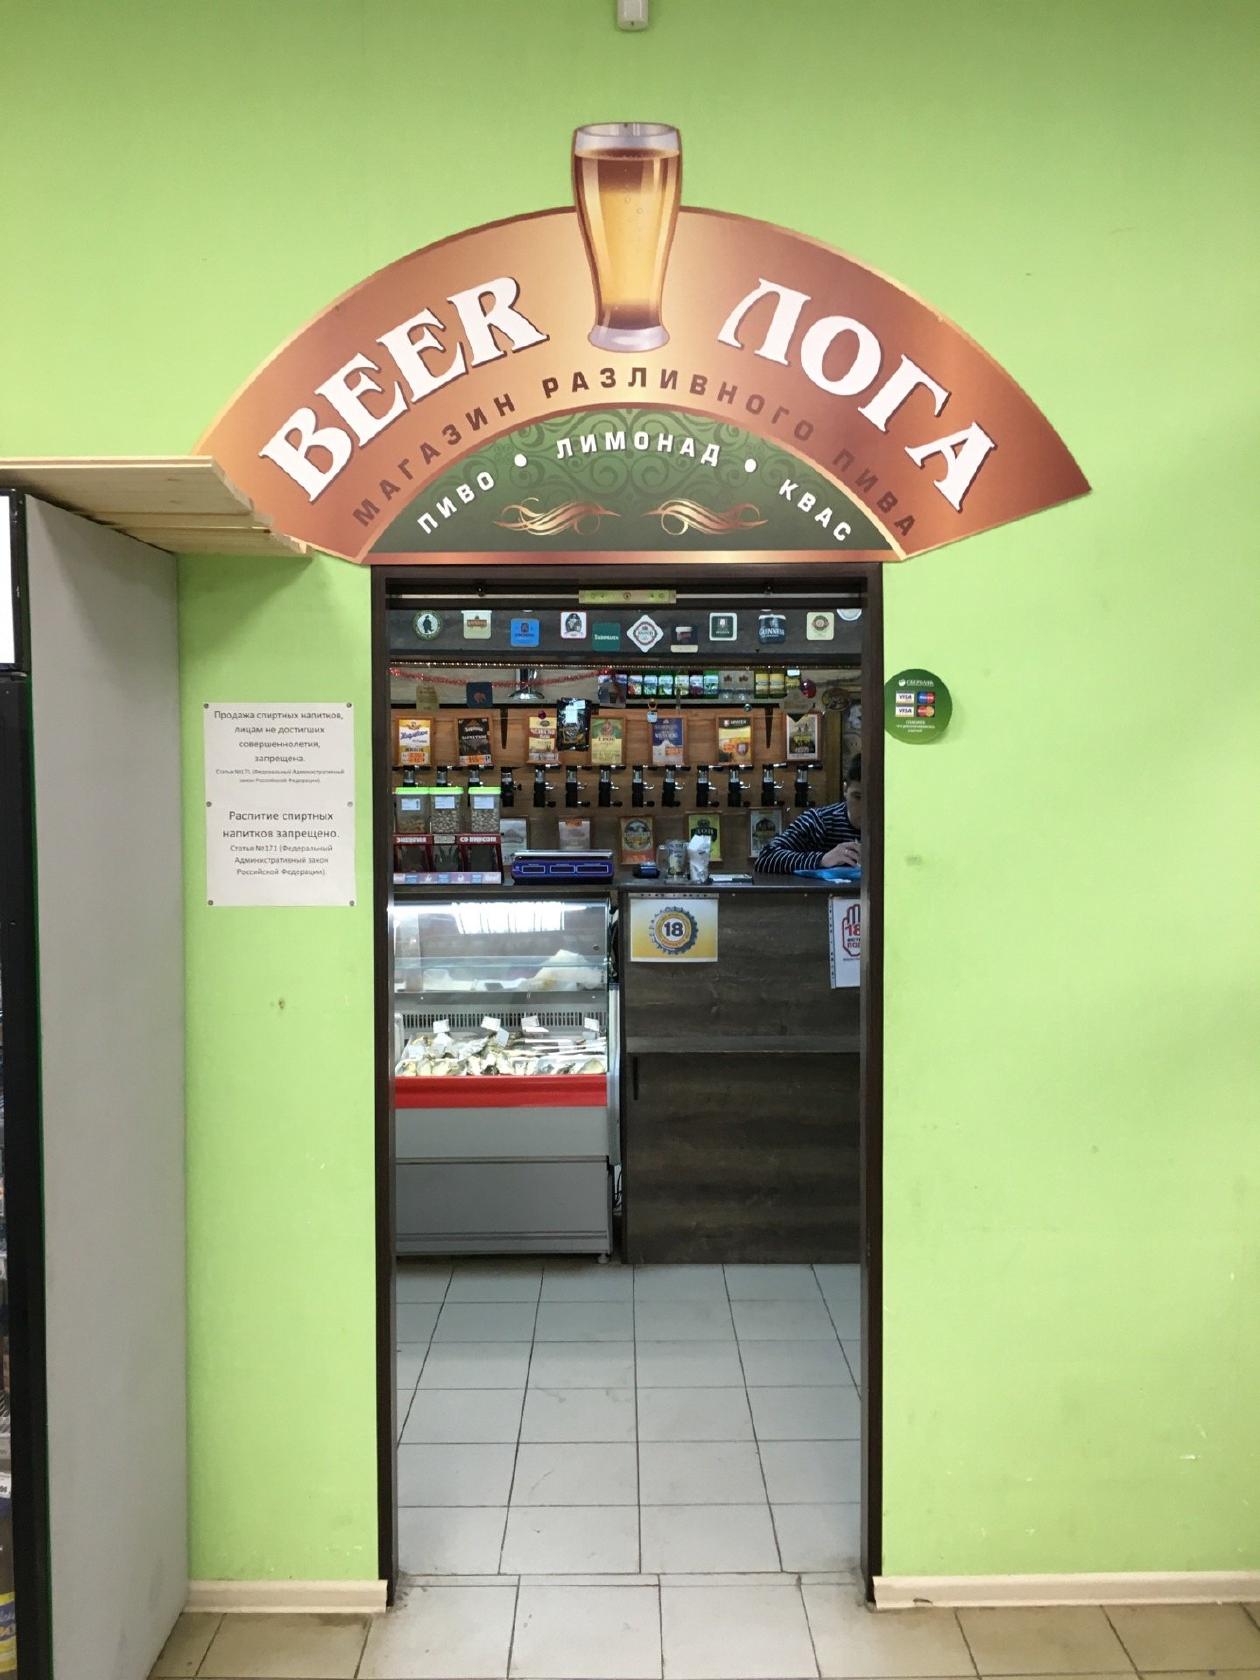 beer loga